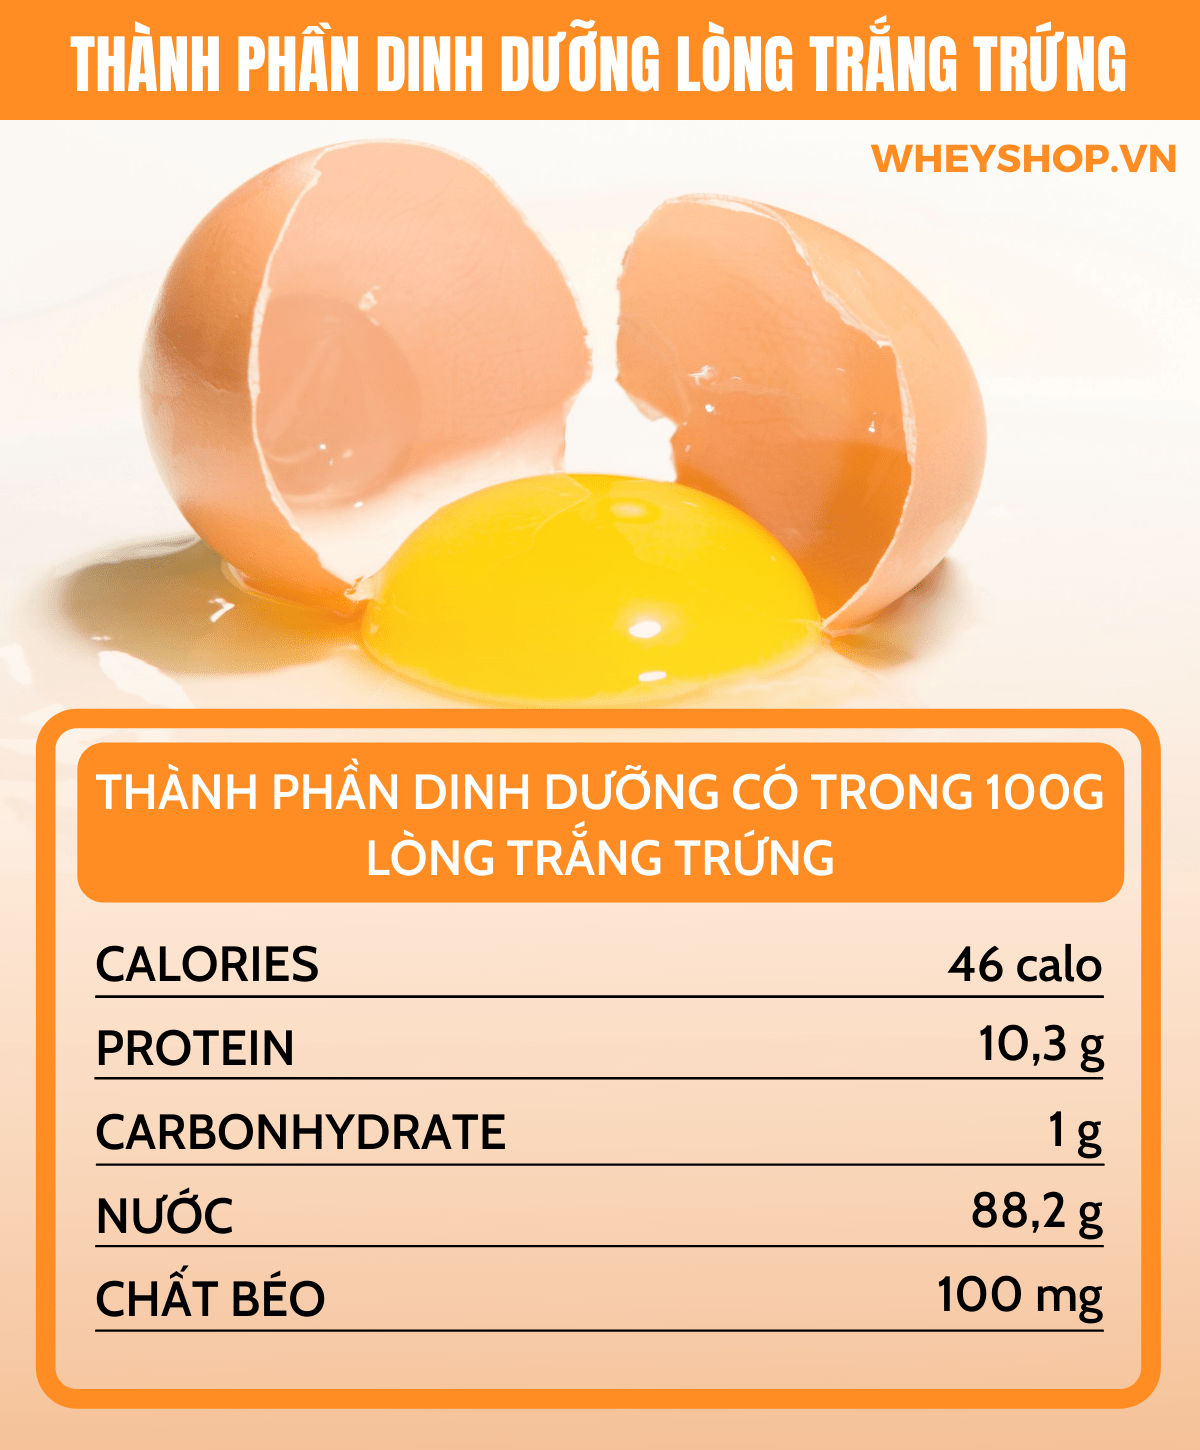 Lòng trắng trứng bao nhiêu protein